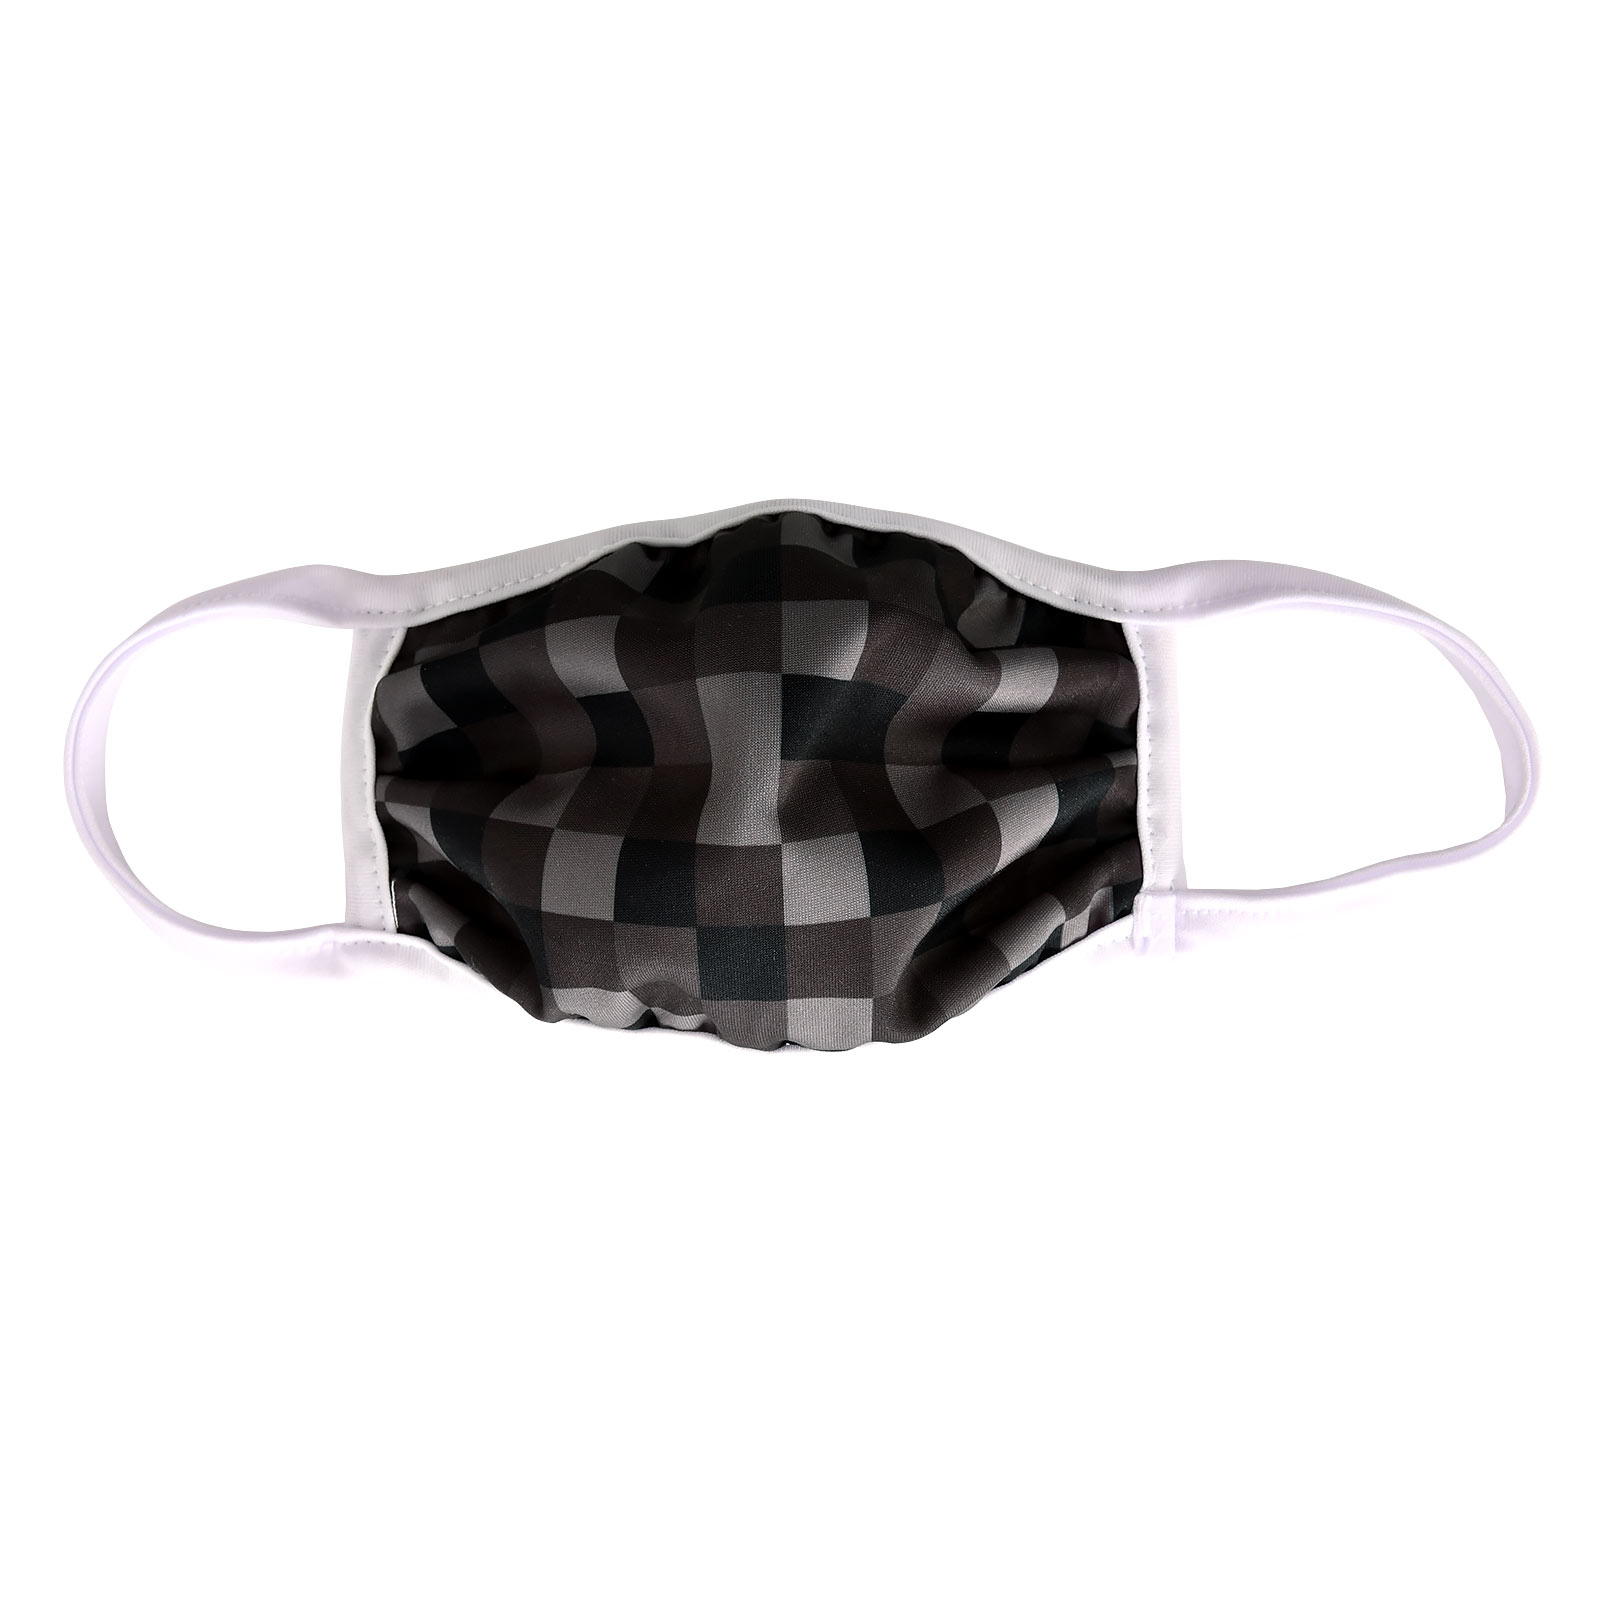 Pixel Gezichtsmasker voor Minecraft Fans